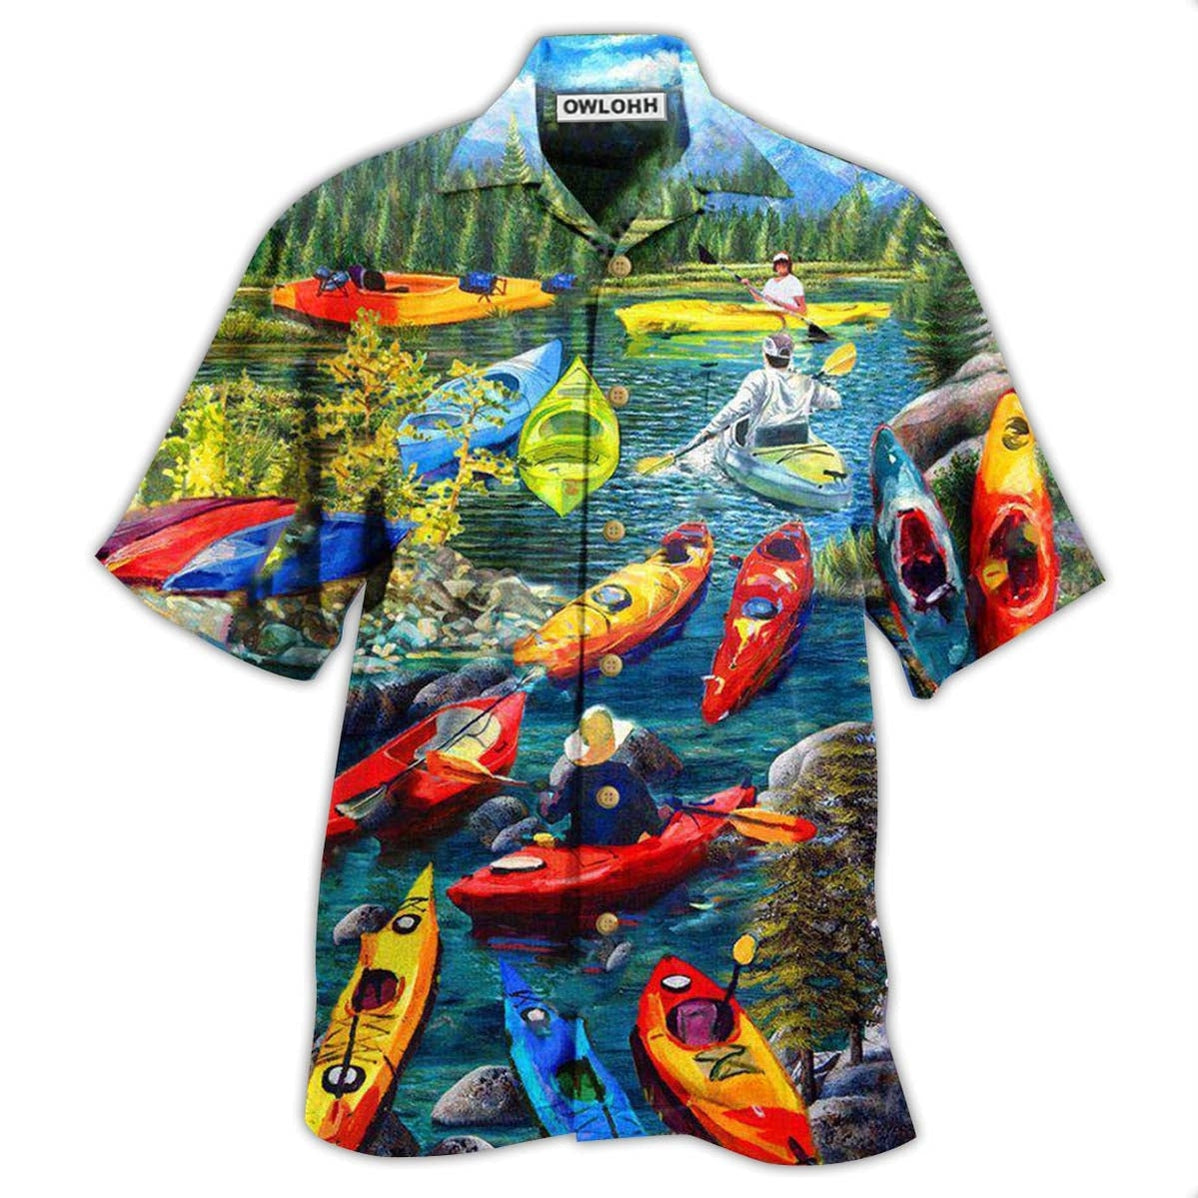 Hawaiian Shirt / Adults / S Kayaking Gets Me Wet - Hawaiian Shirt - Owls Matrix LTD